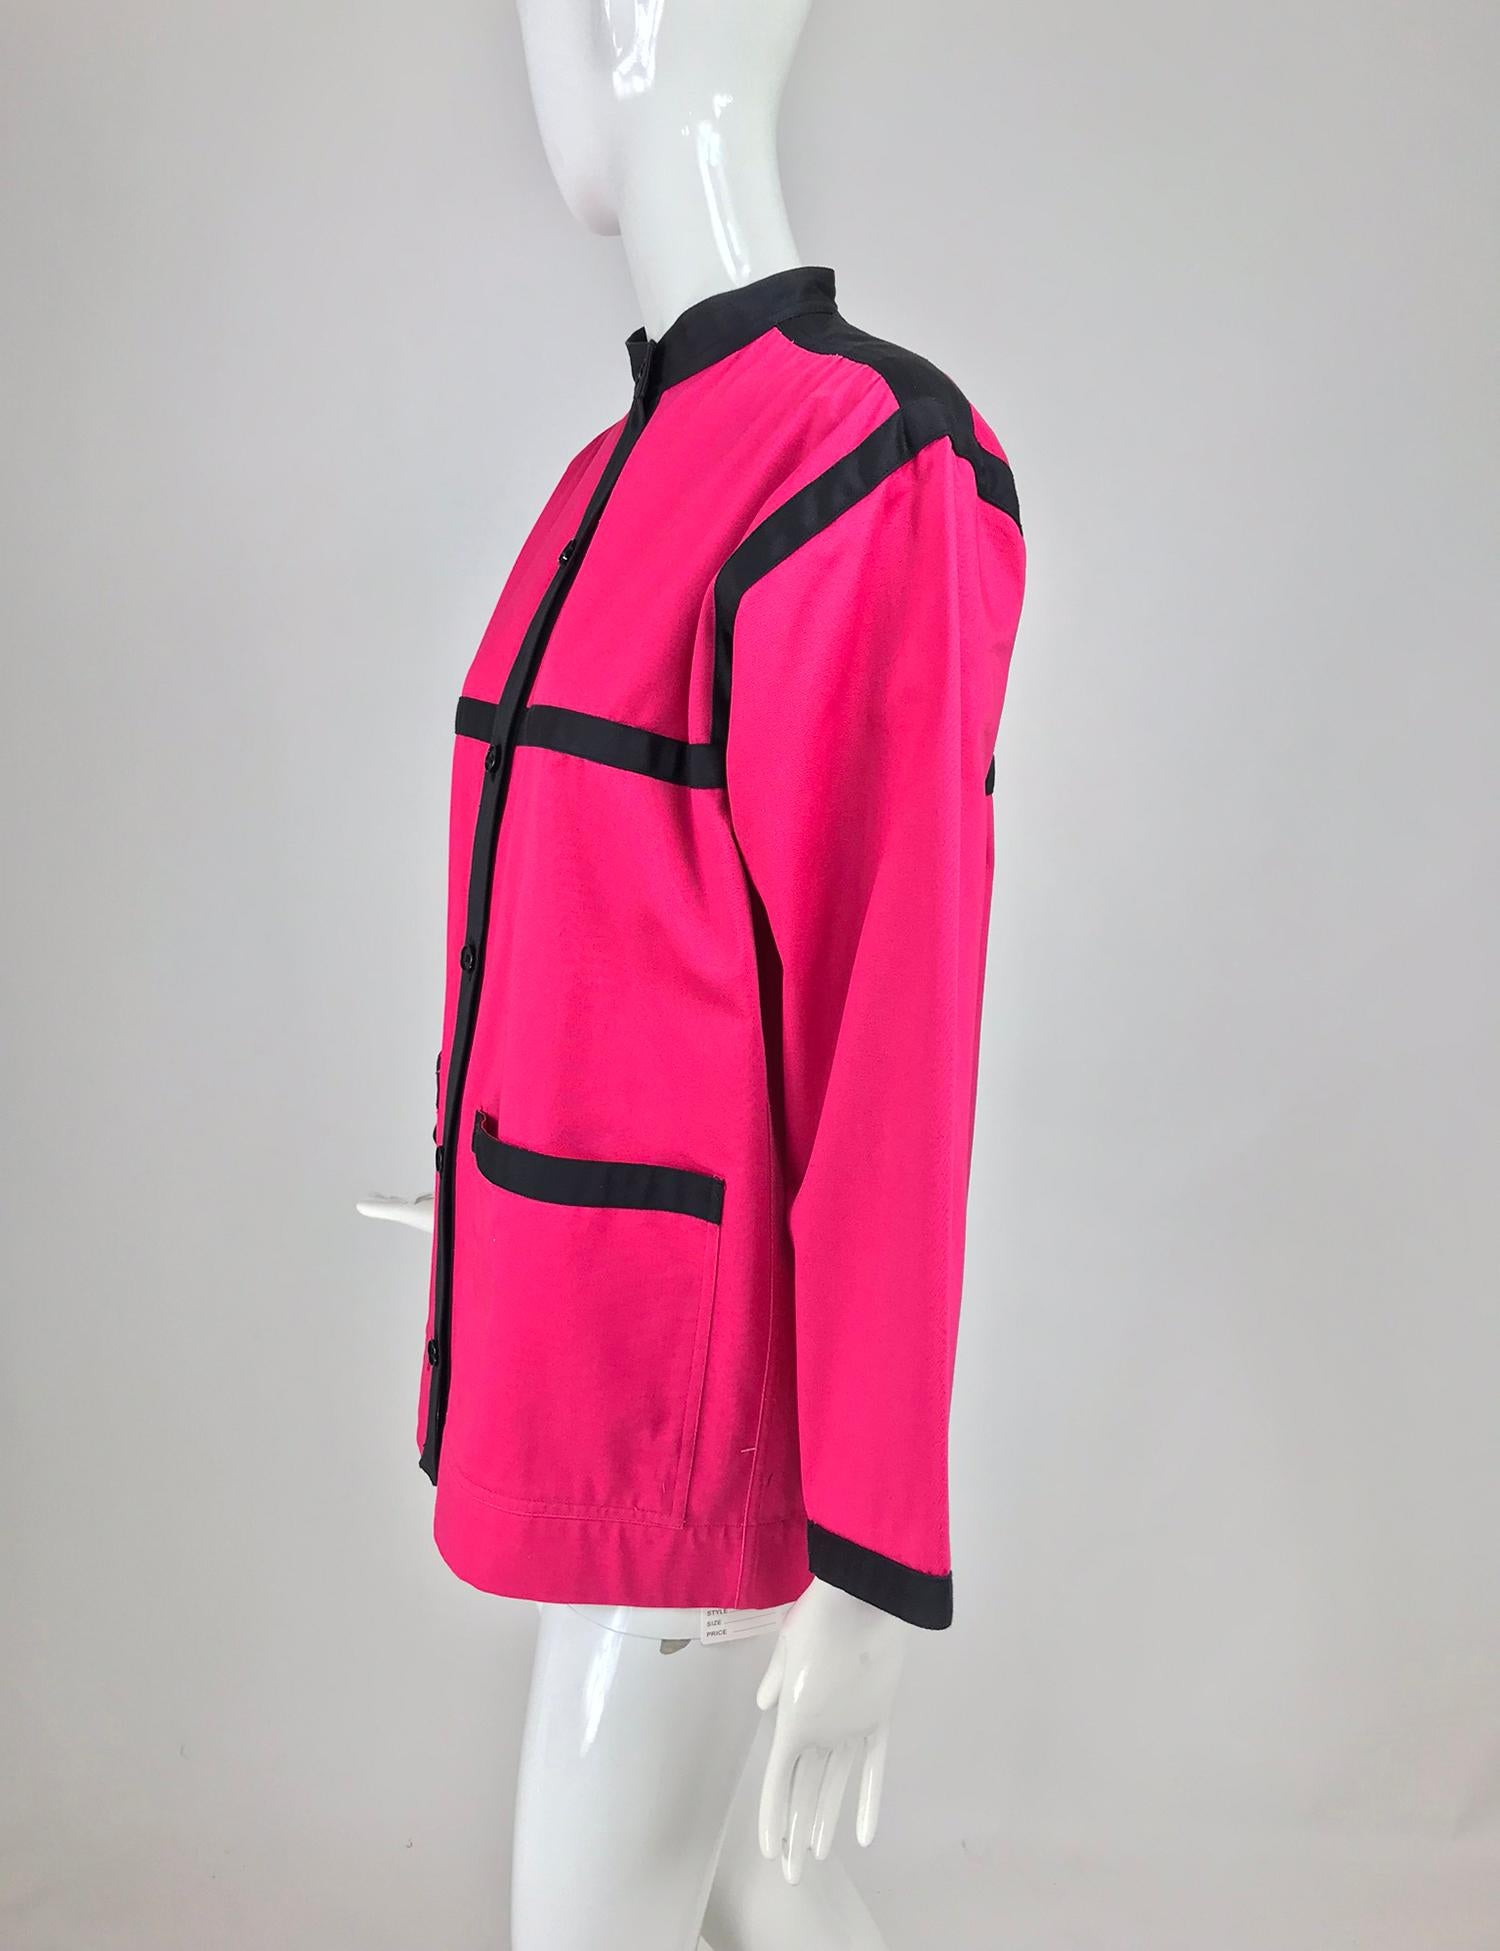 Yves Saint Laurent Hot Pink Colour Block Jacket 1970s For Sale 6